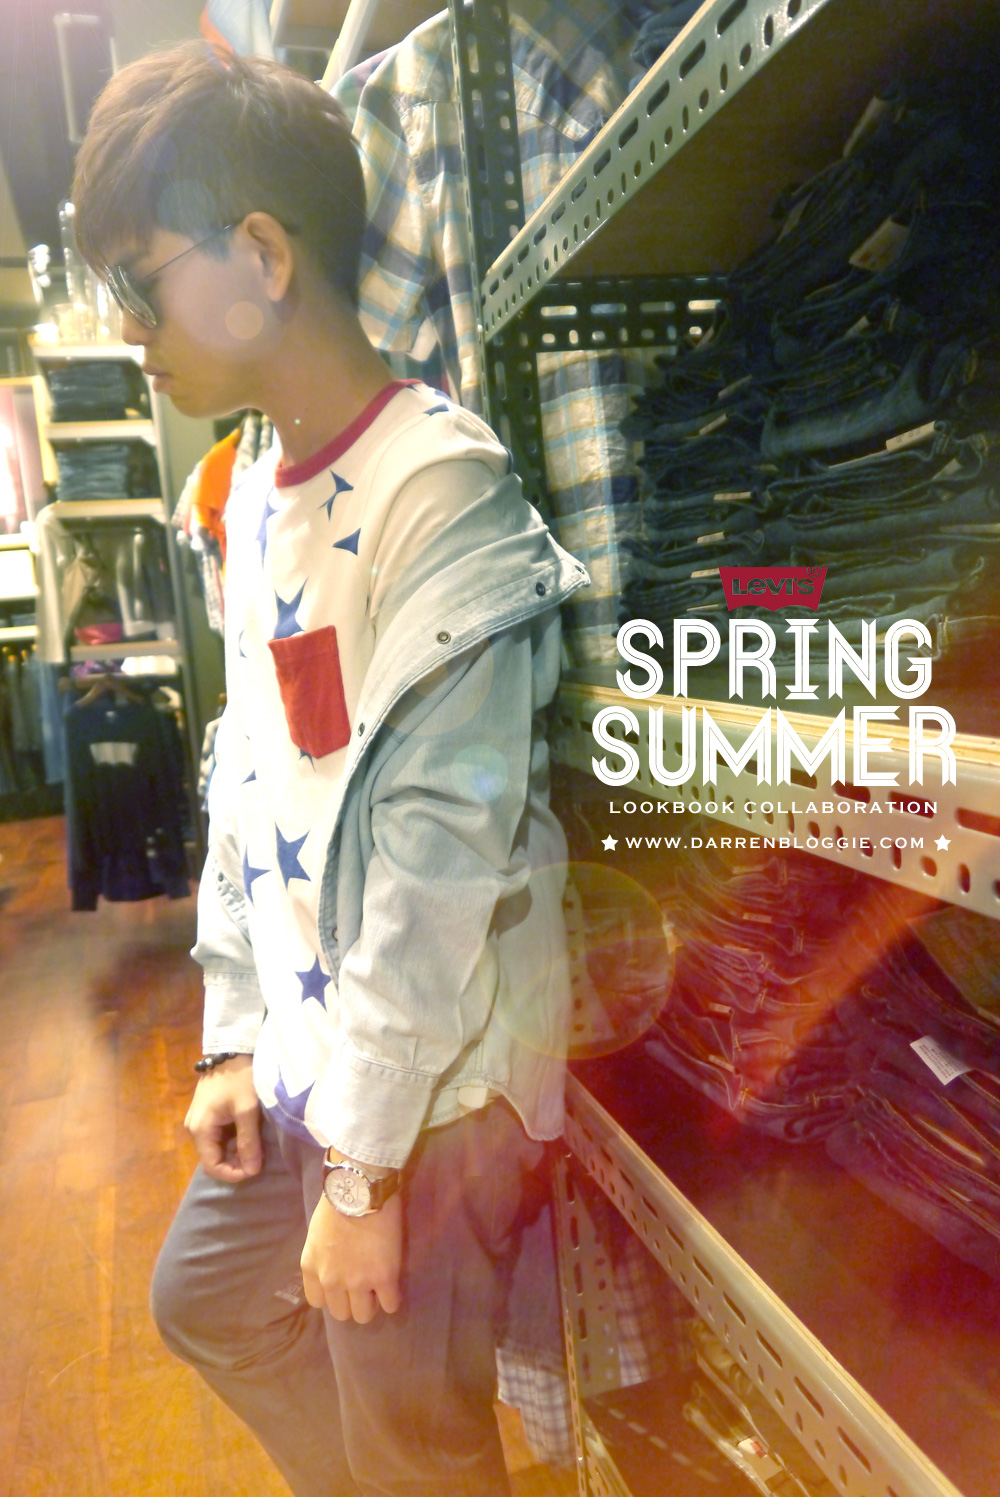 Darren Bloggie X LEVI'S Spring/Summer Lookbook Collaboration